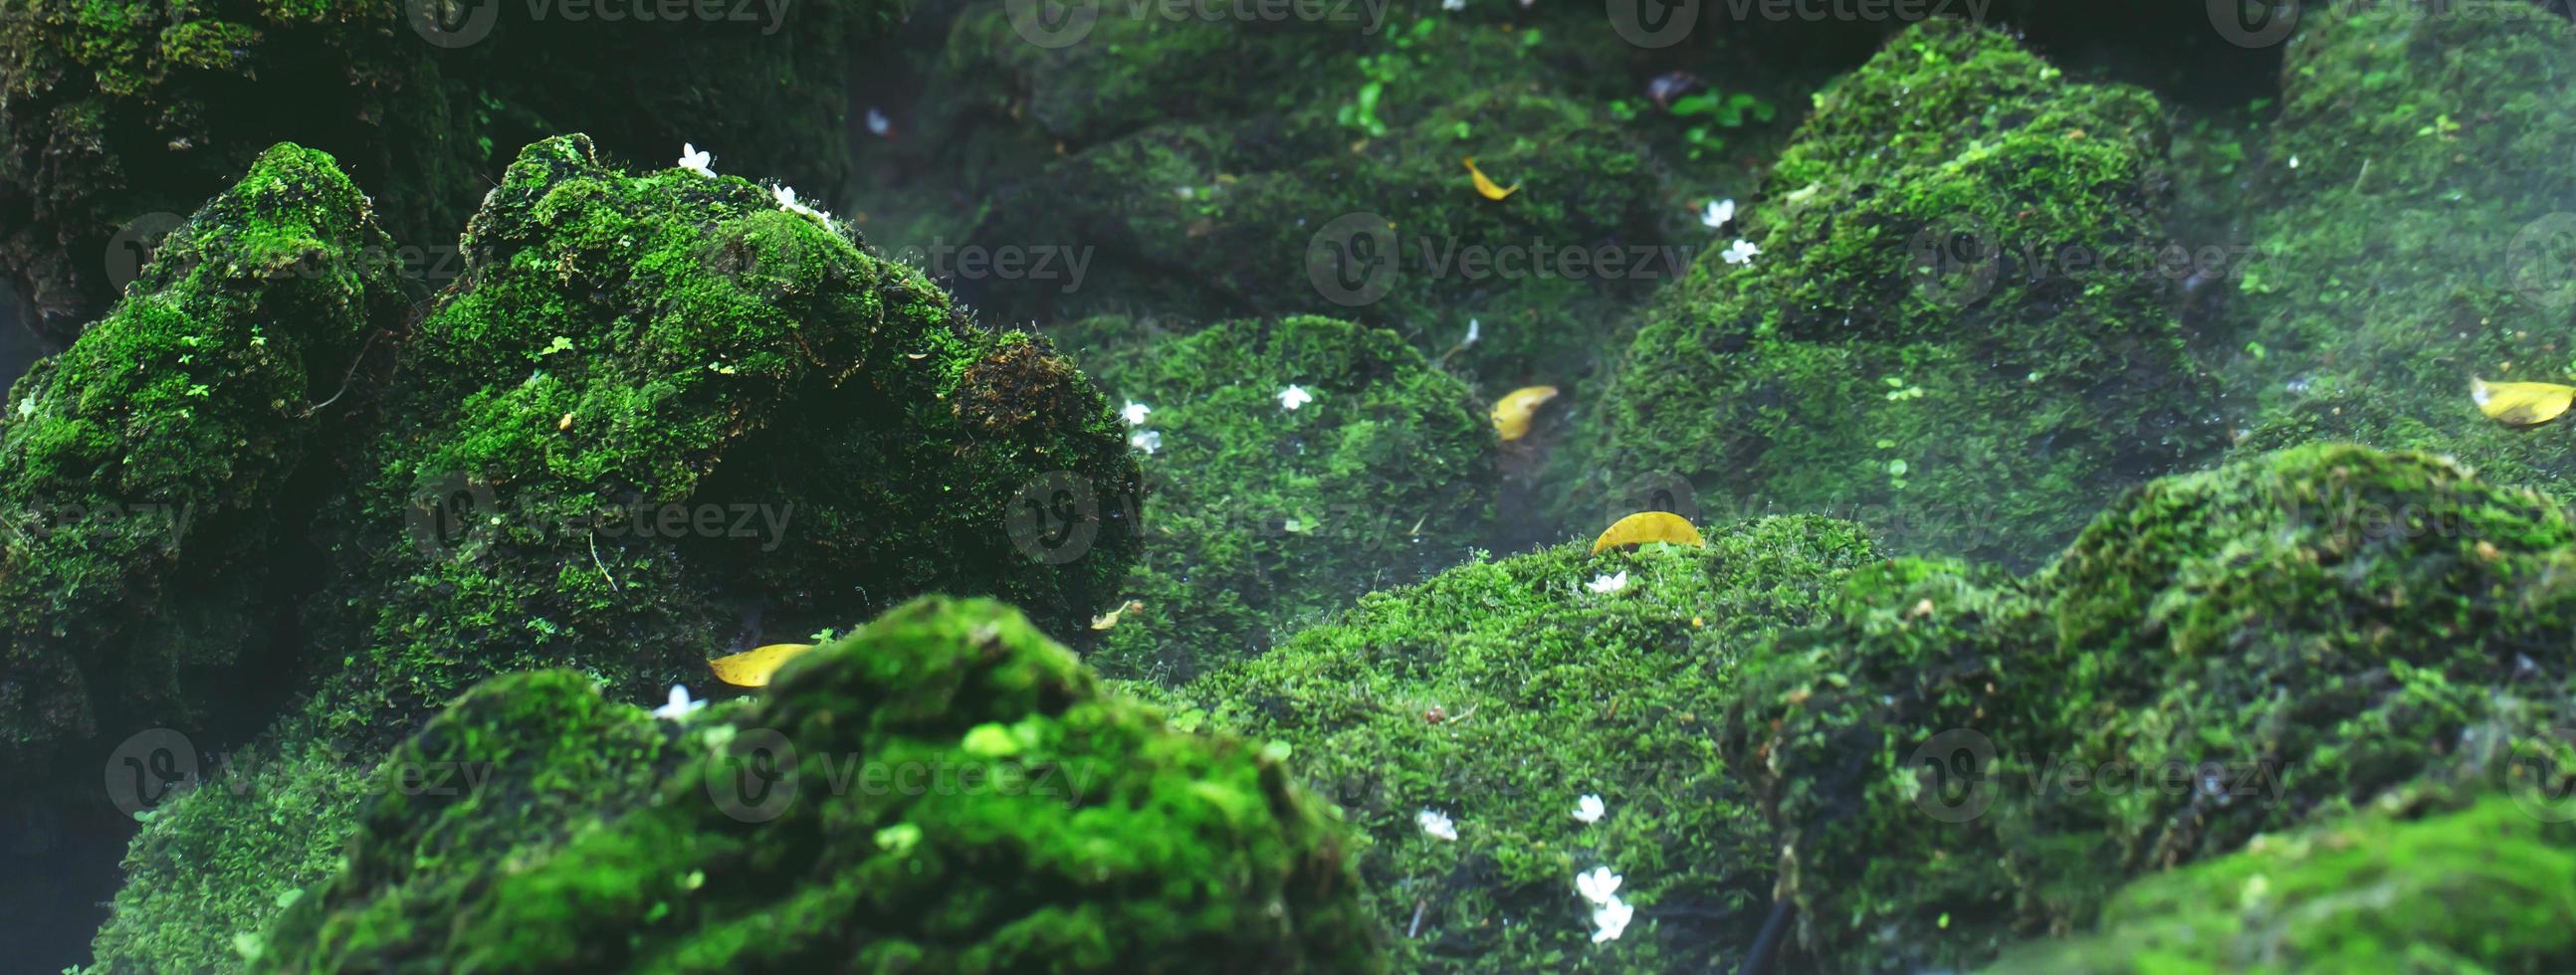 lindo musgo verde brilhante crescido cobre as pedras ásperas e no chão da floresta. mostrar com visualização macro. rochas cheias de textura de musgo na natureza para papel de parede. foco suave. foto